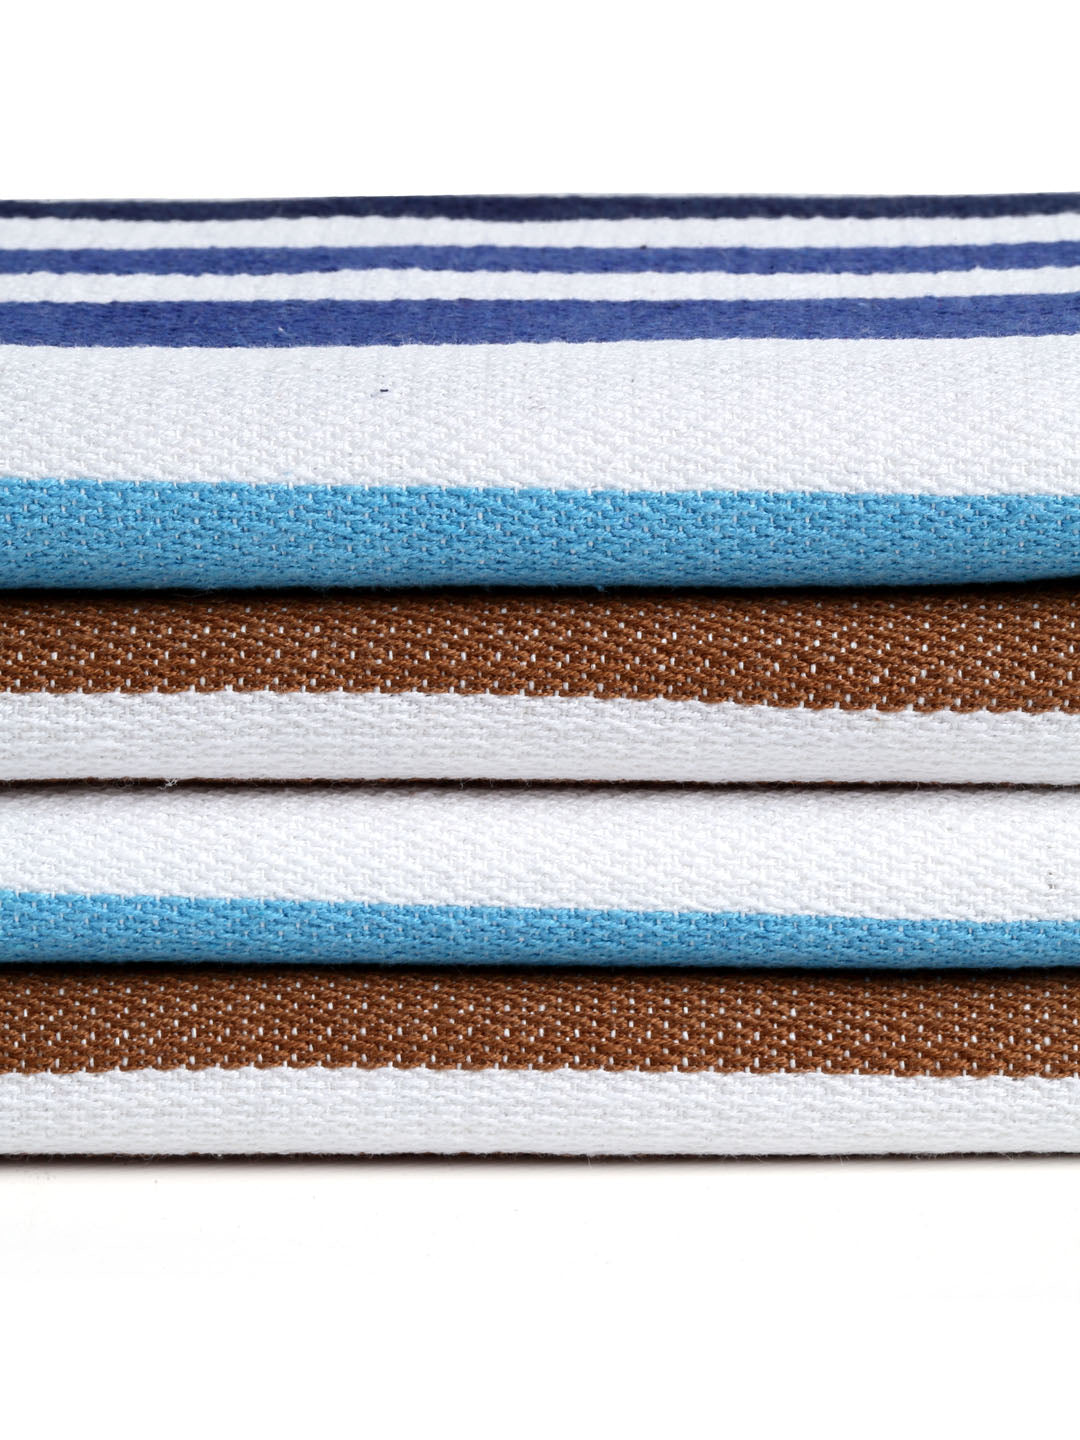 Arrabi Multi Stripes Handwoven Cotton Hand Towel (Set of 4) (85 X 35 cm)